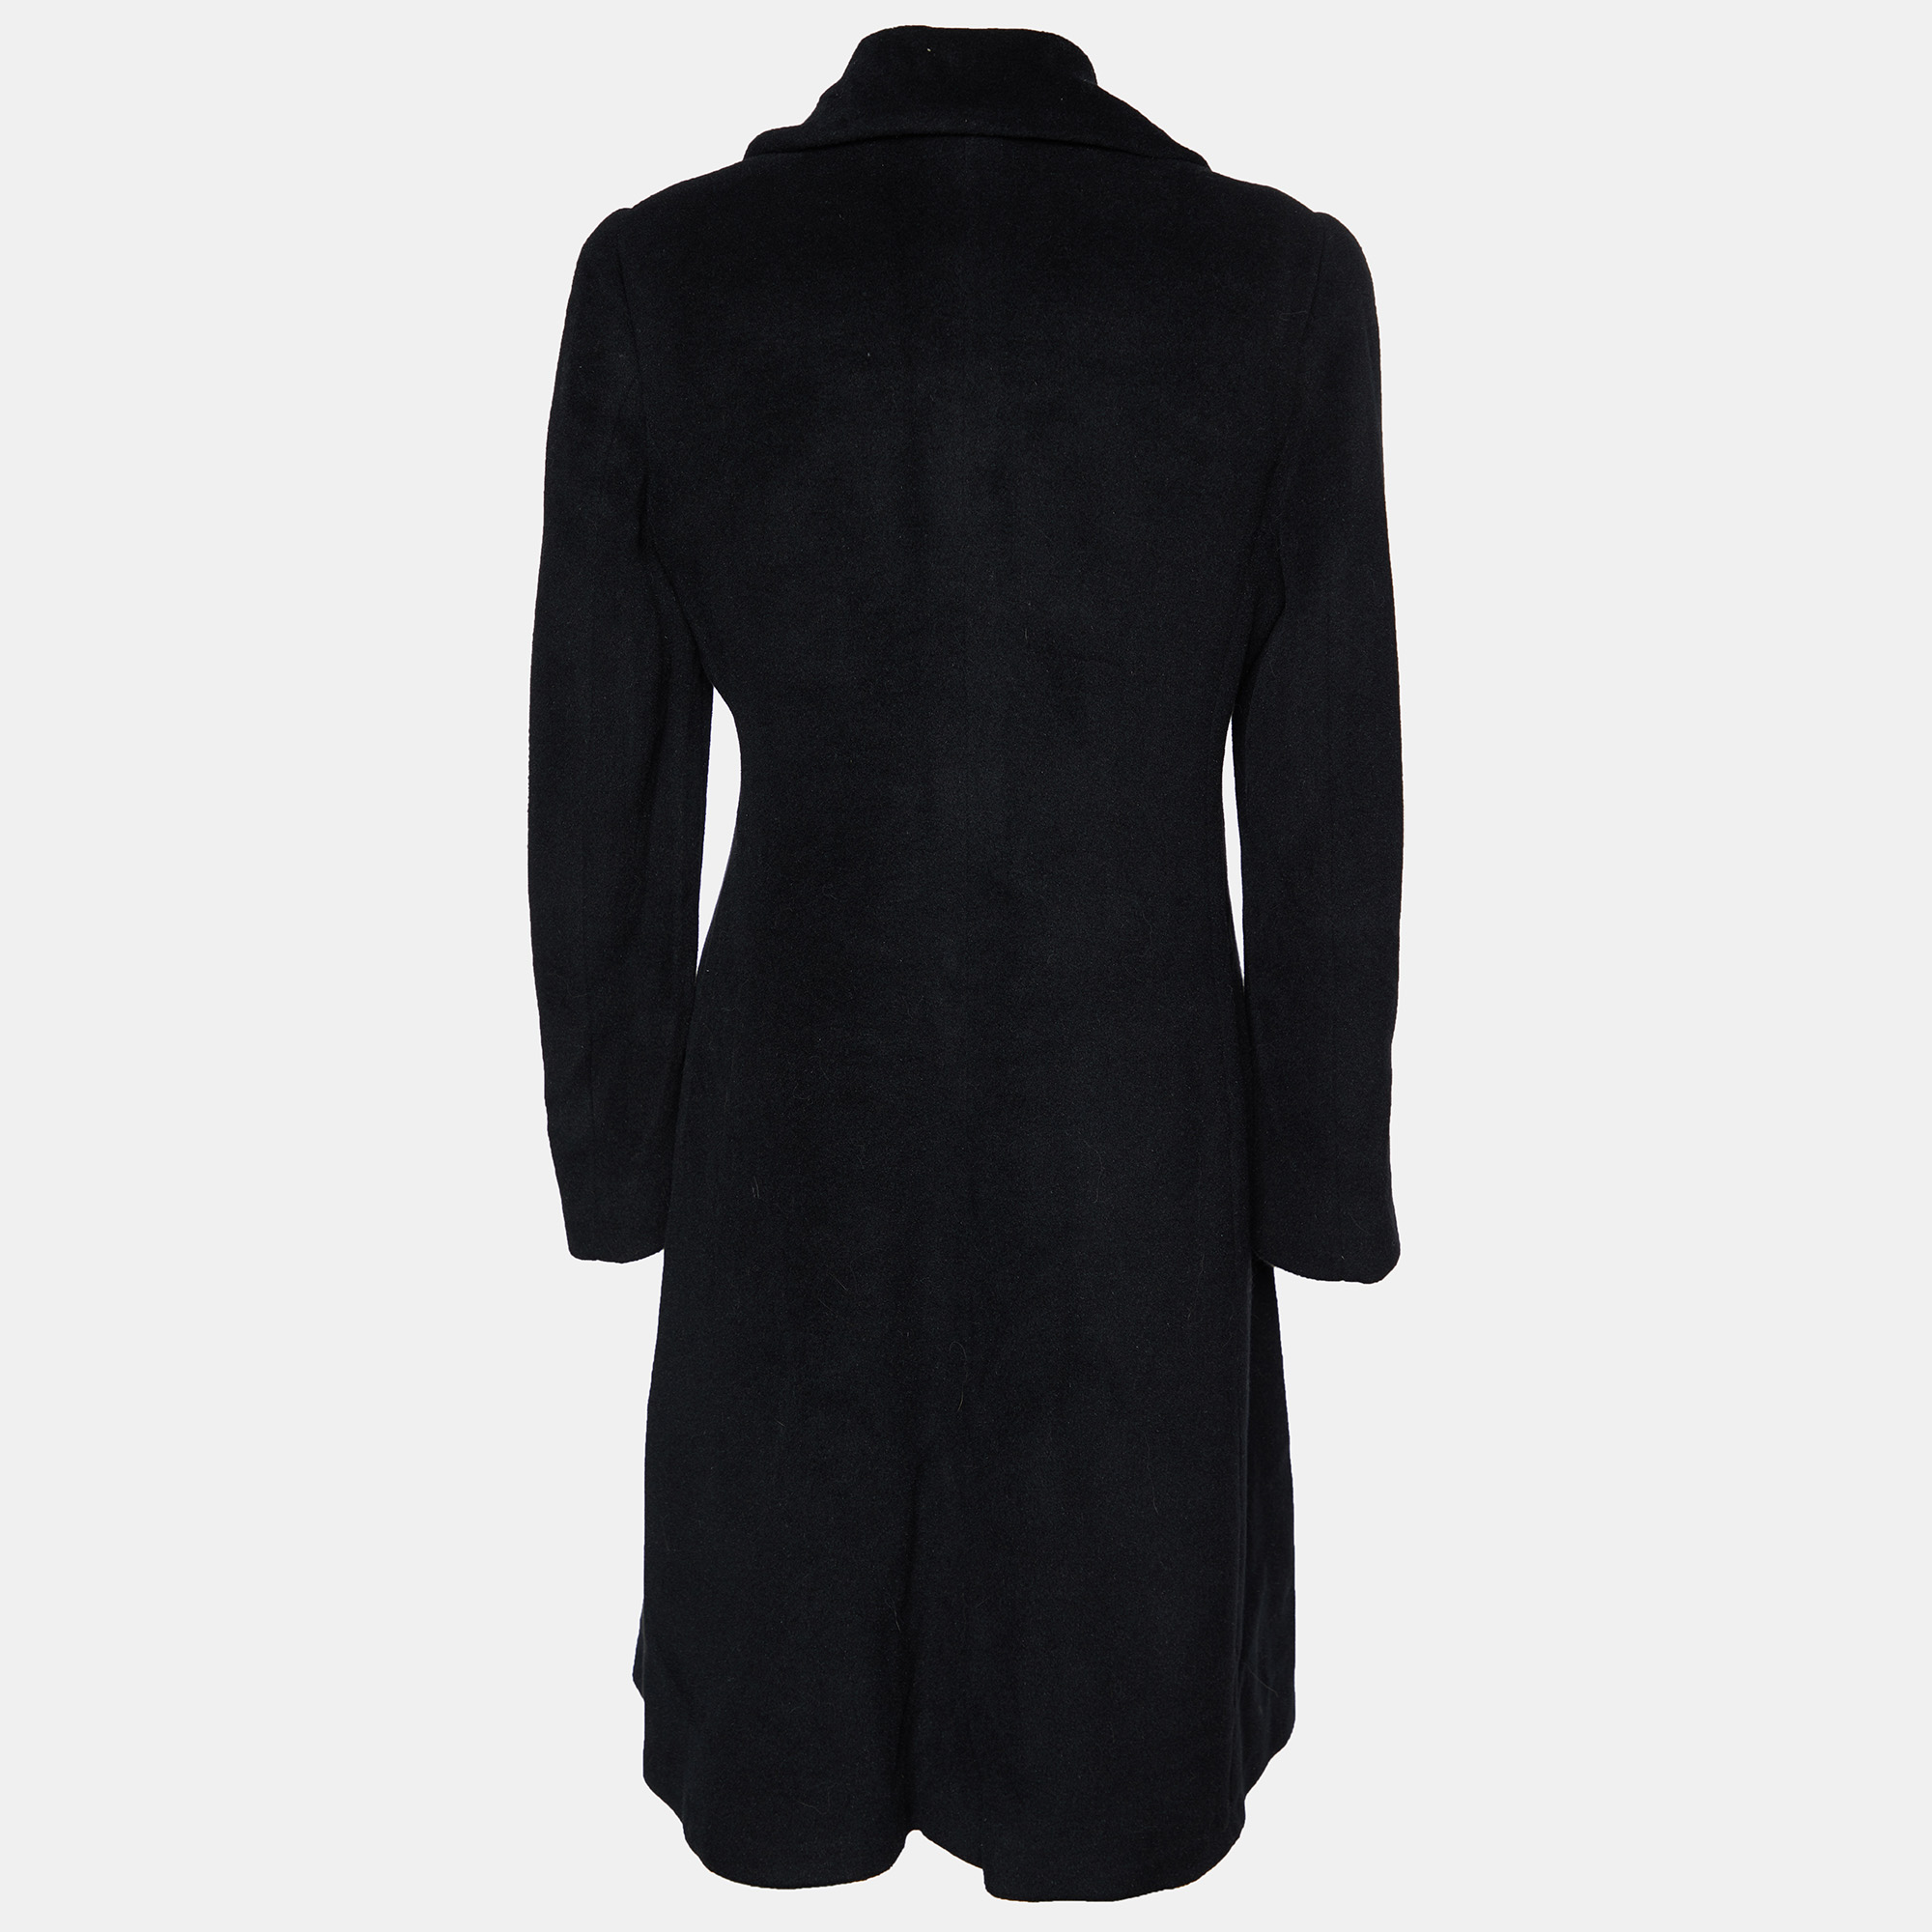 

Armani Collezioni Black Angora & Wool Double Breasted Overcoat